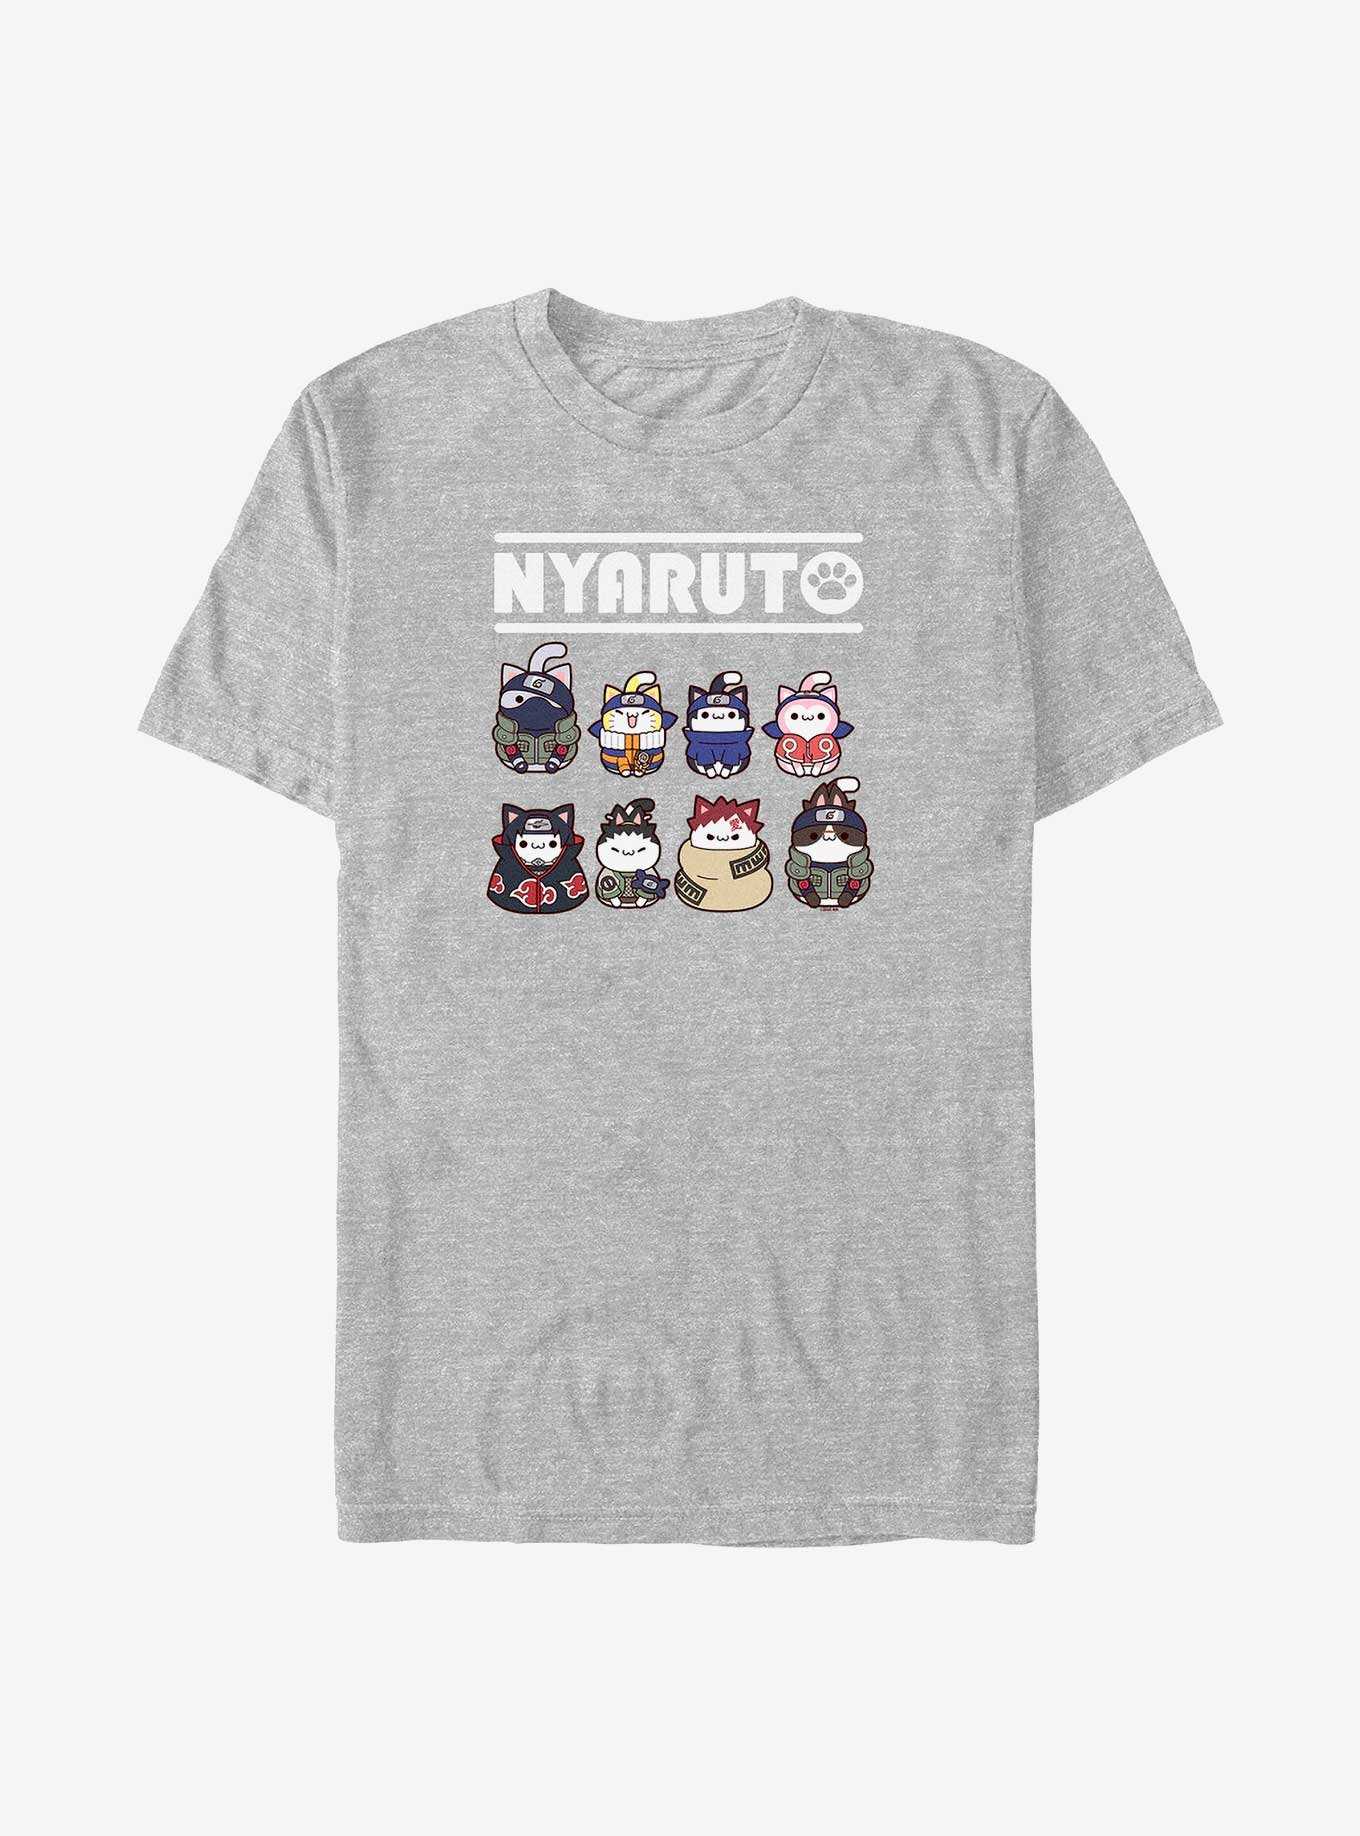 Naruto Nyaruto Cat Lineup T-Shirt, , hi-res